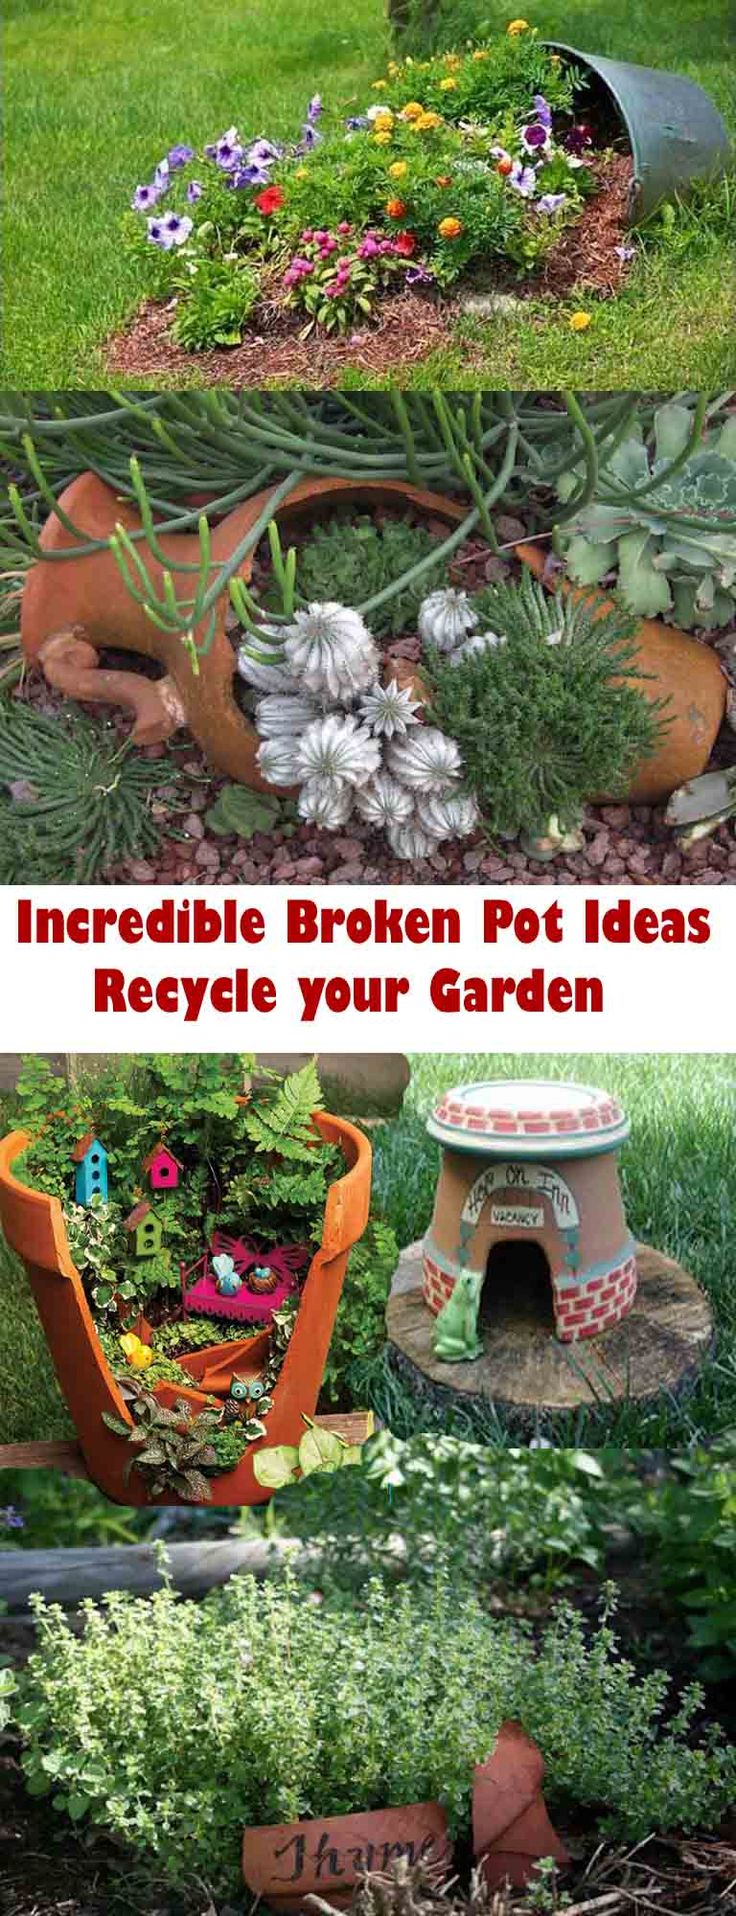 Incredible Broken Pot Ideas: Recycle your Garden